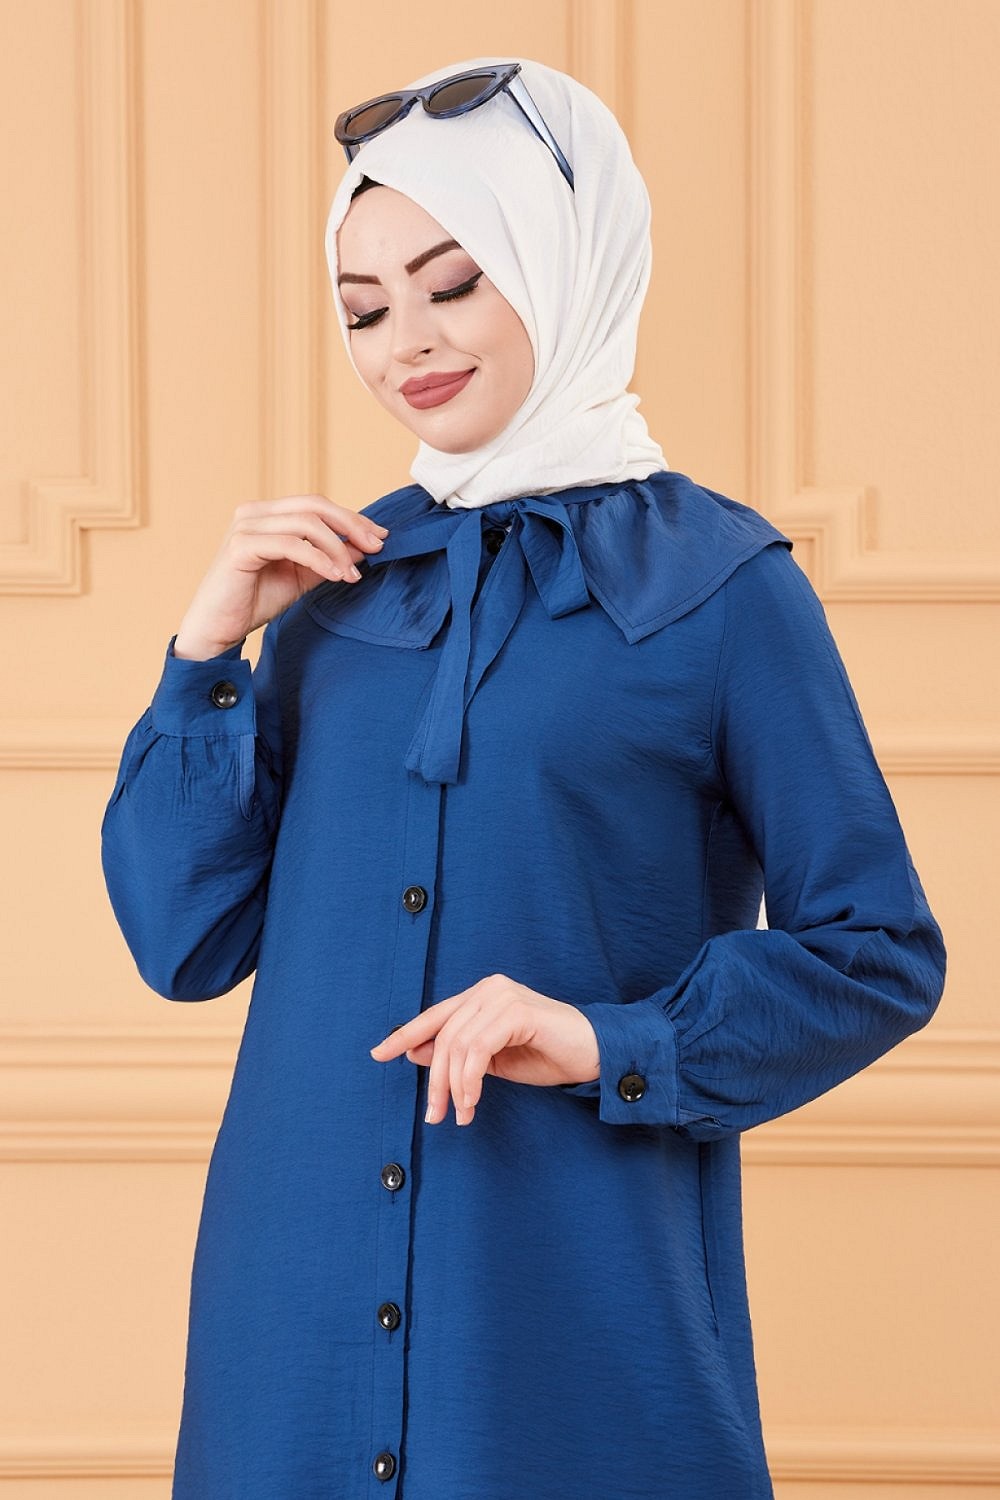 Chemise à froufrou (Vetement femme voilée en ligne) - Couleur bleu pétrole